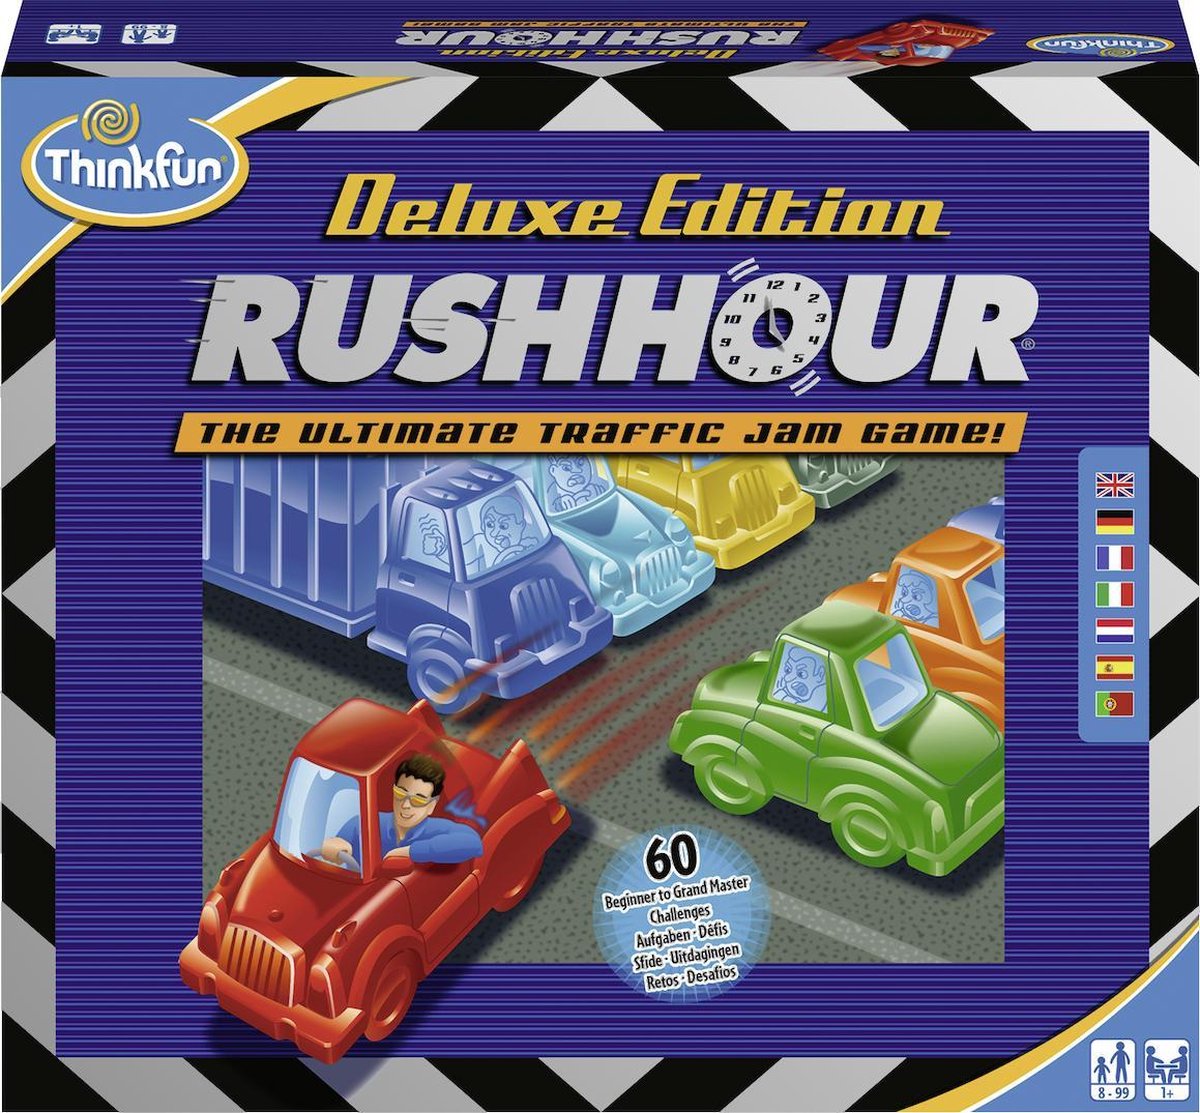   Rush Hour Deluxe